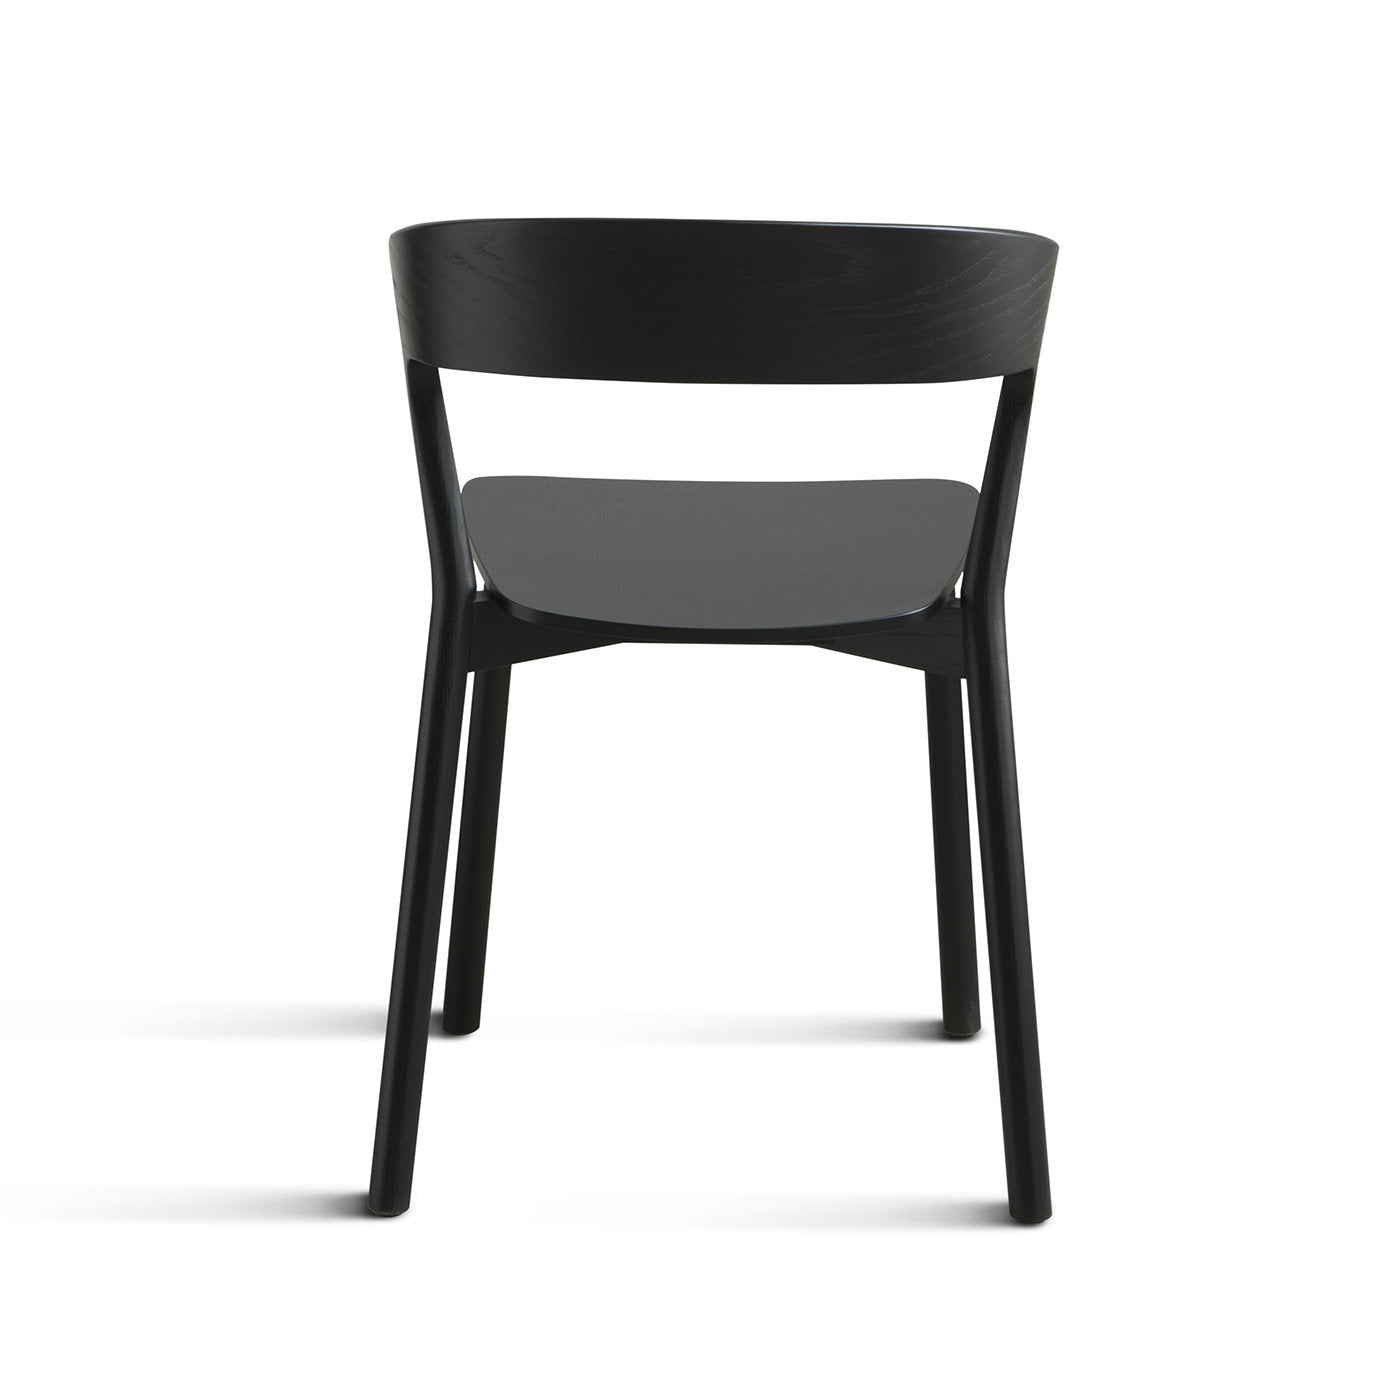 Edith Le Black Chair by Massimo Broglio - Alternative view 1